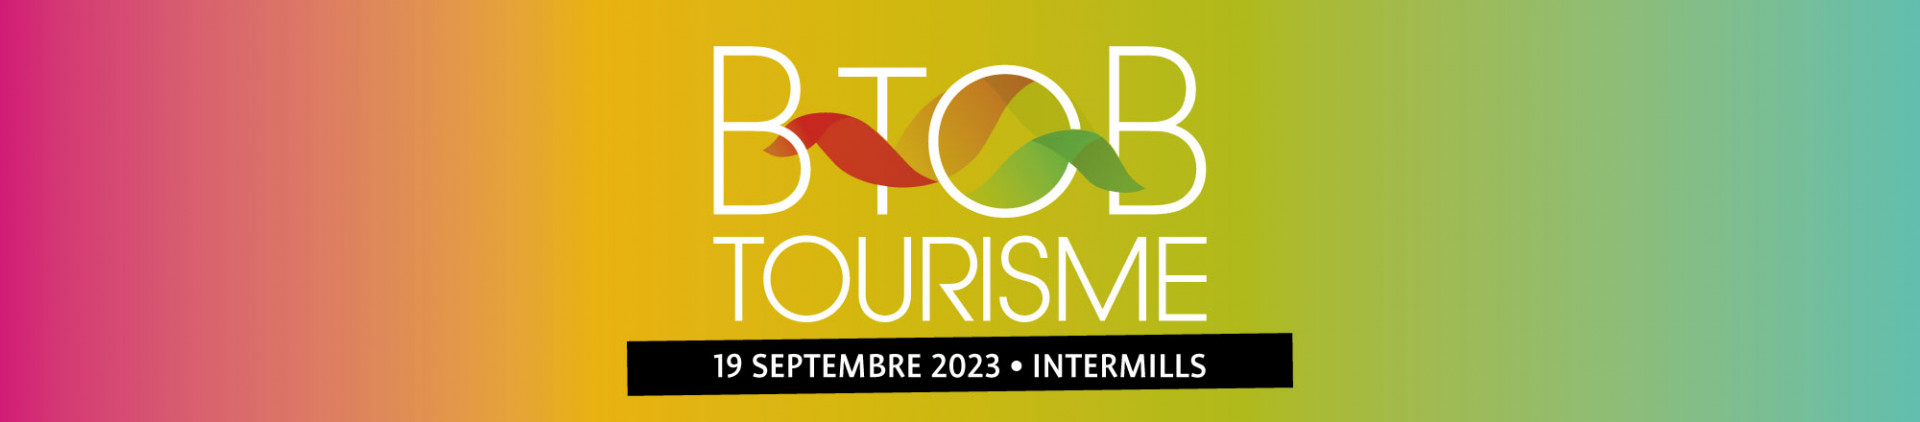 BtoB Tourisme 2023 - #Réseauter - Fédération du Tourisme de la Province de Liège